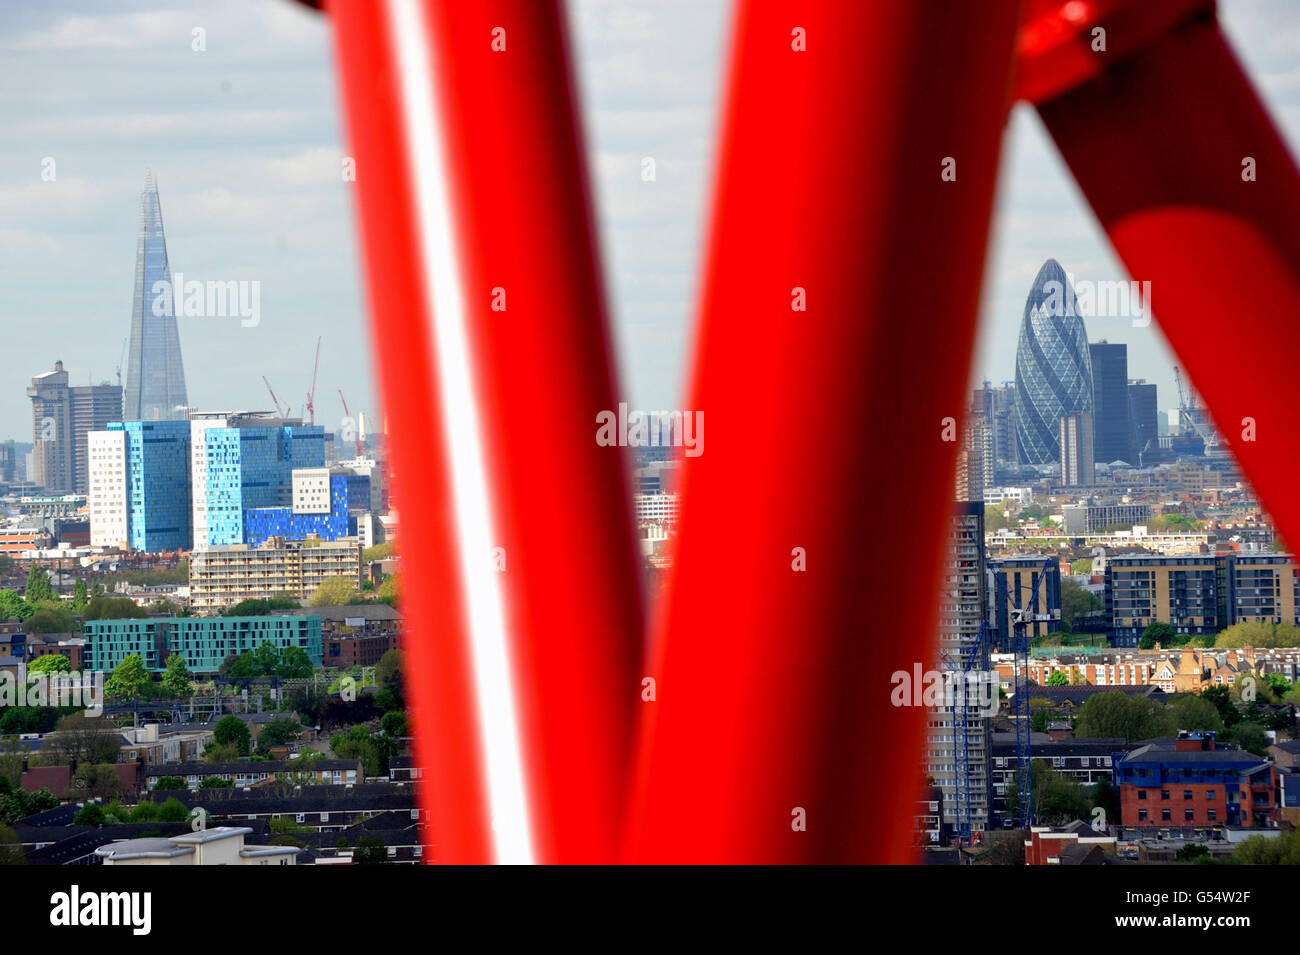 Vue sur Londres des bâtiments Shard et Gherkin depuis le tout nouvel ArcelorMittal Orbit.La sculpture a été conçue par Anish Kapoor et Cecil Balmond et se tiendra au cœur du Parc olympique et paralympique de Londres 2012. Banque D'Images